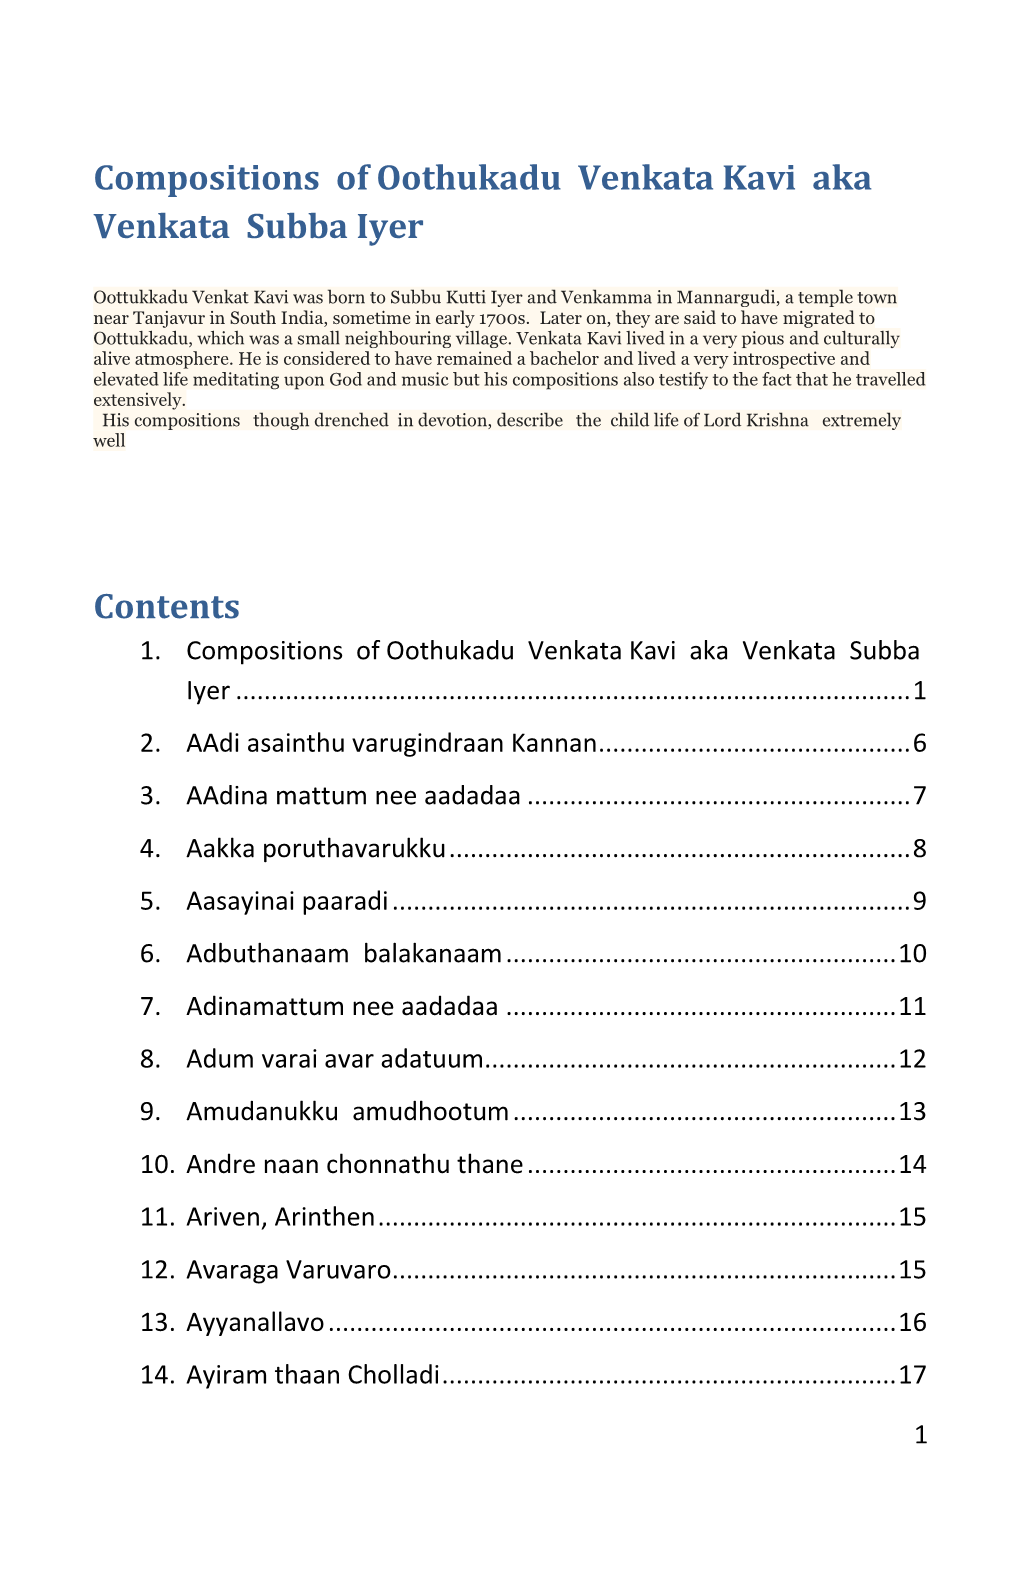 Compositions of Oothukadu Venkata Kavi Aka Venkata Subba Iyer Contents